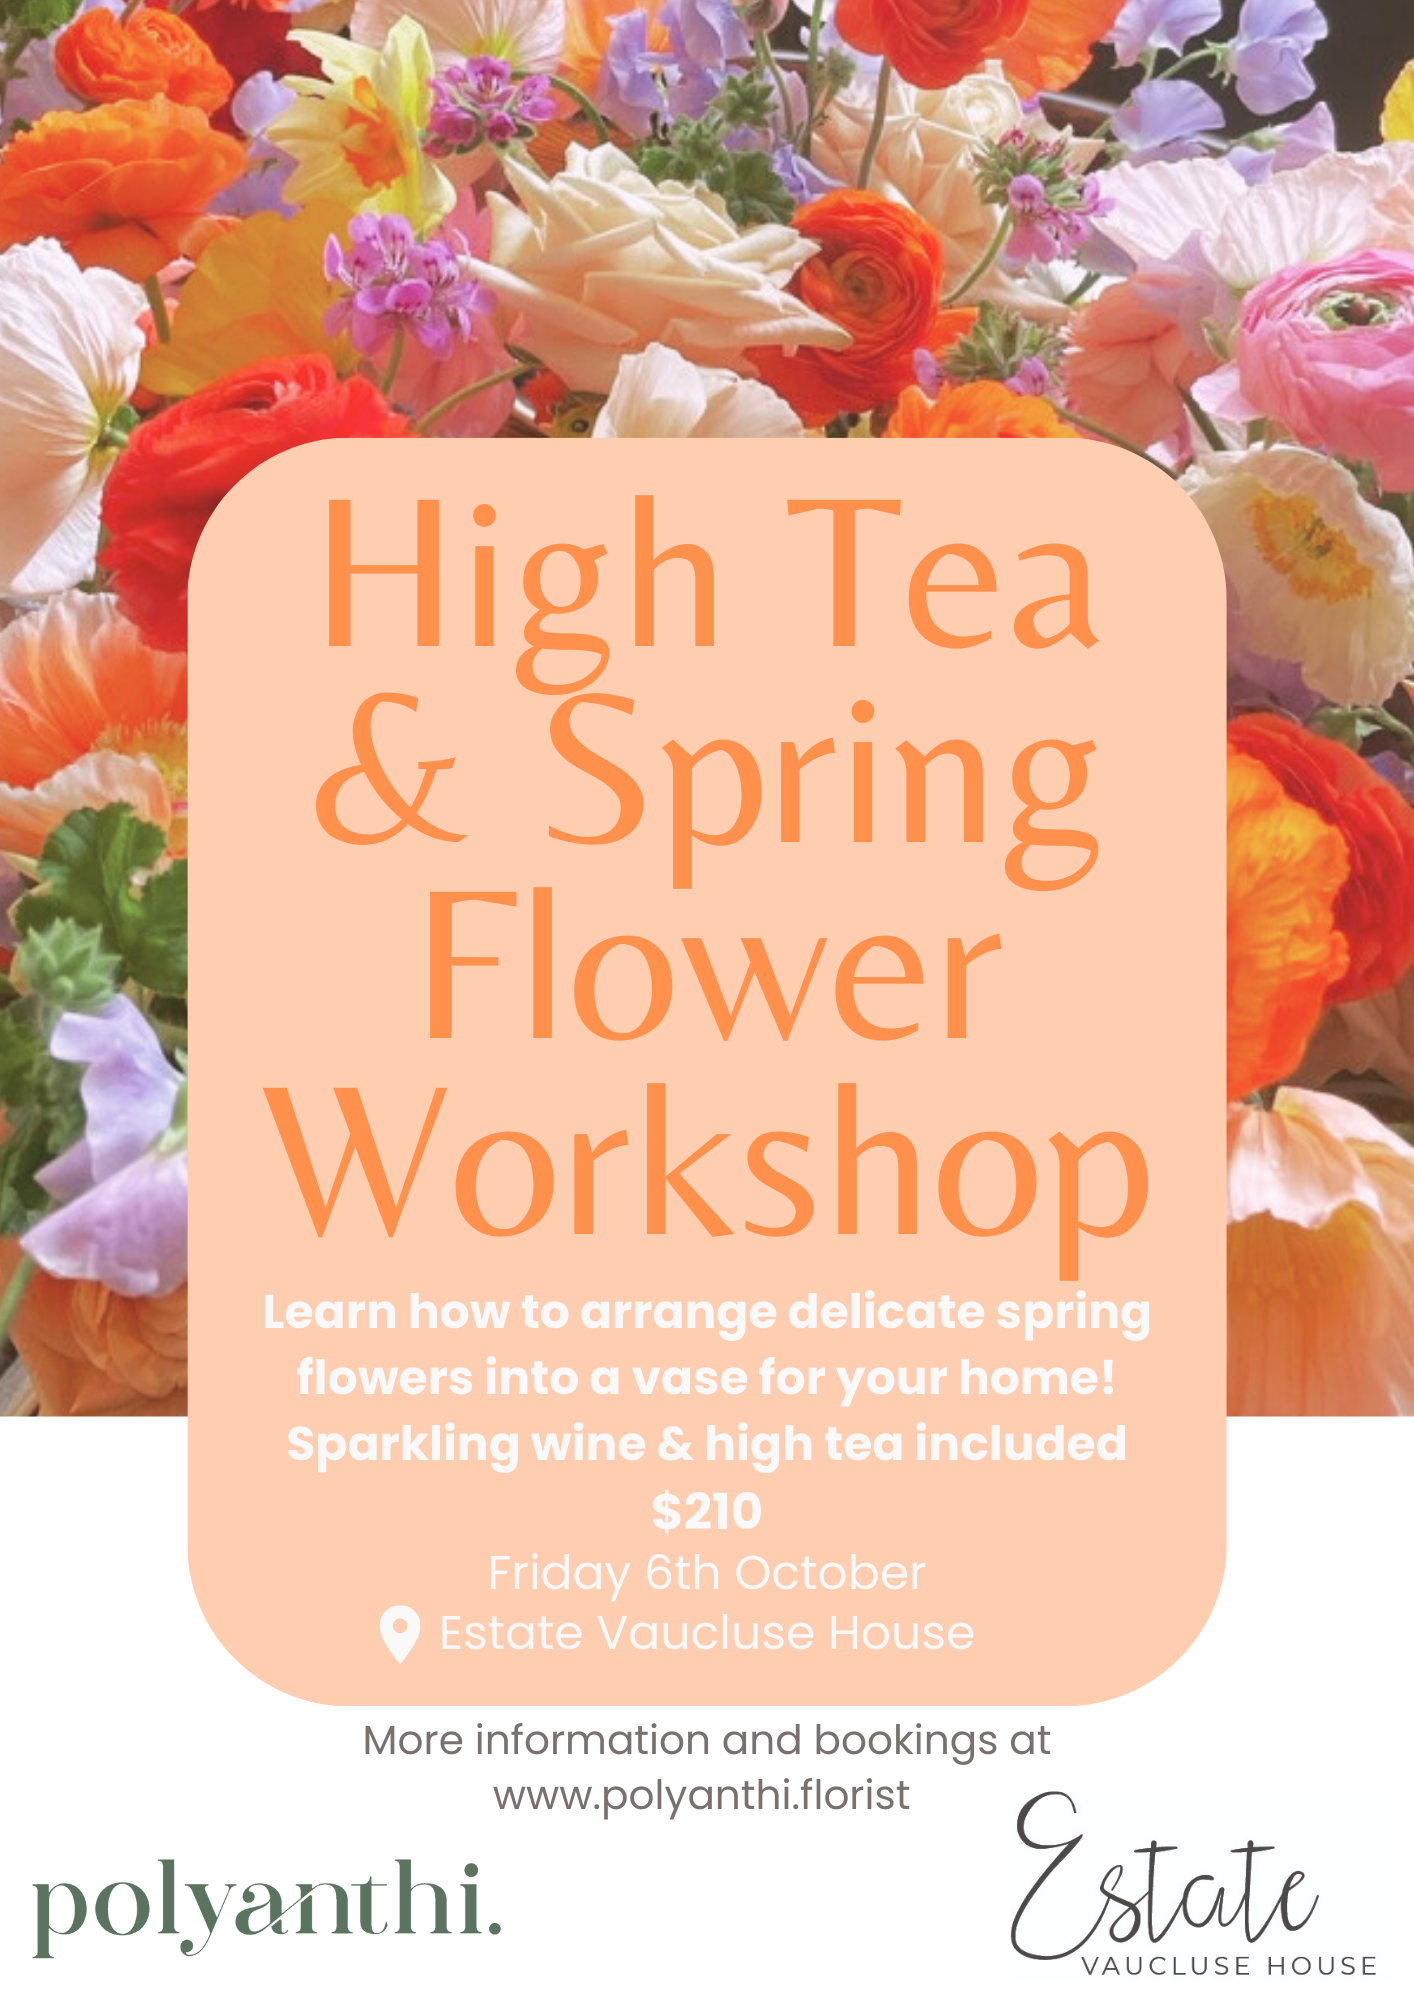 High Tea & Spring Flower Workshop Friday October 6th